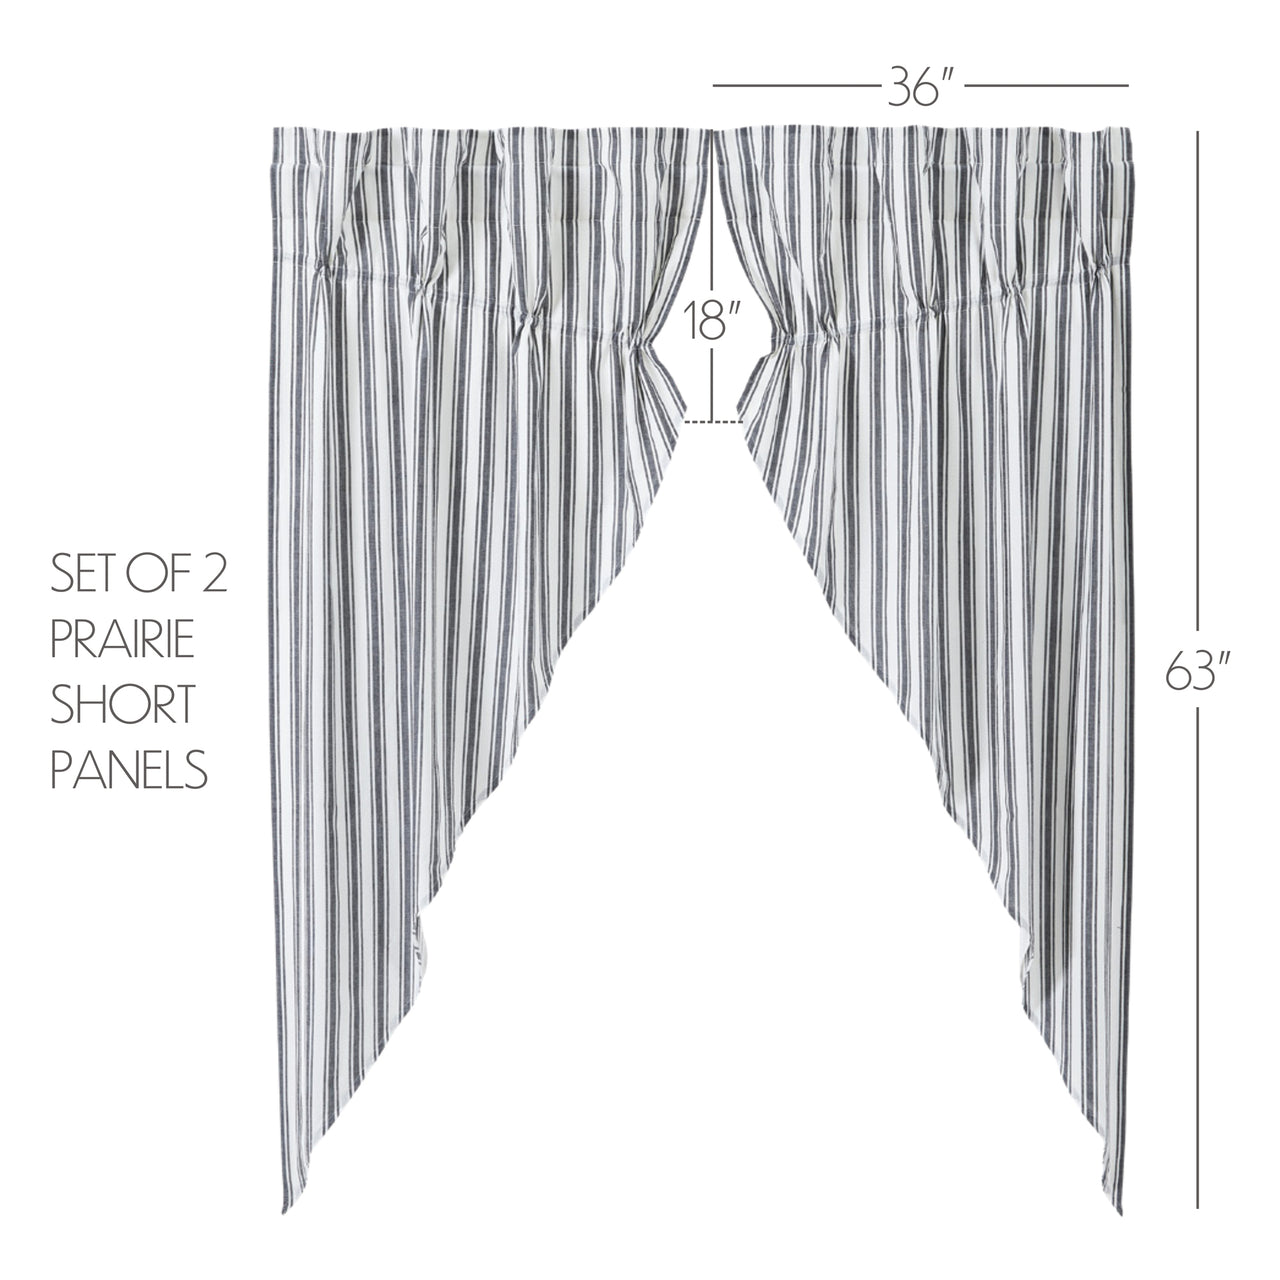 Sawyer Mill Black Ticking Stripe Prairie Short Panel Set of 2 63x36x18 VHC Brands